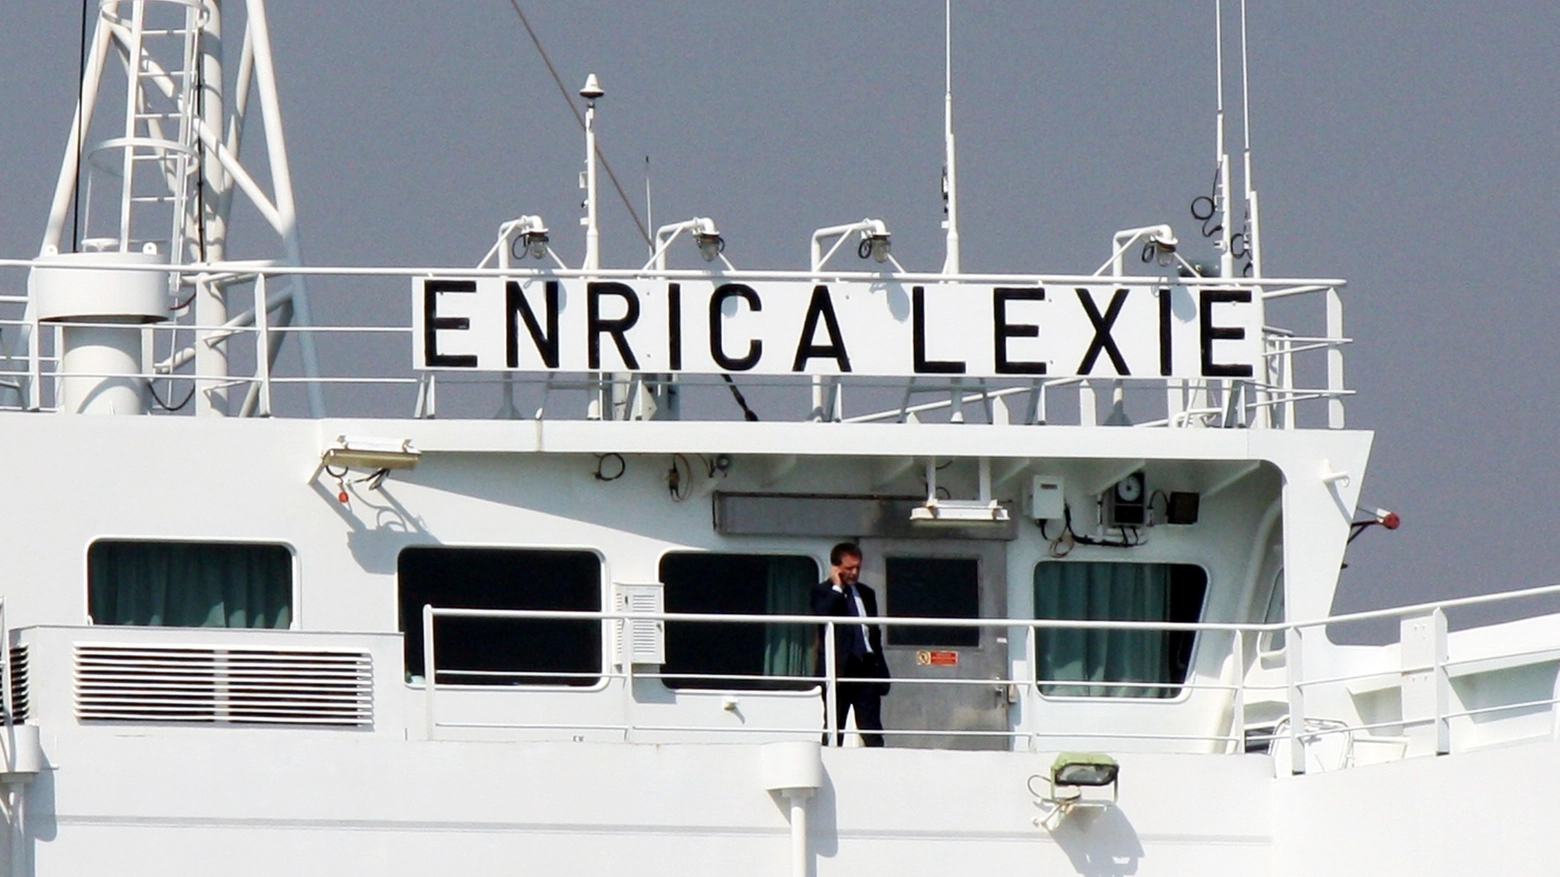 25 febbraio 2012, la petroliera Enrica Lexie, ancorata nel porto di Kochi dopo arresto marò (Ansa)